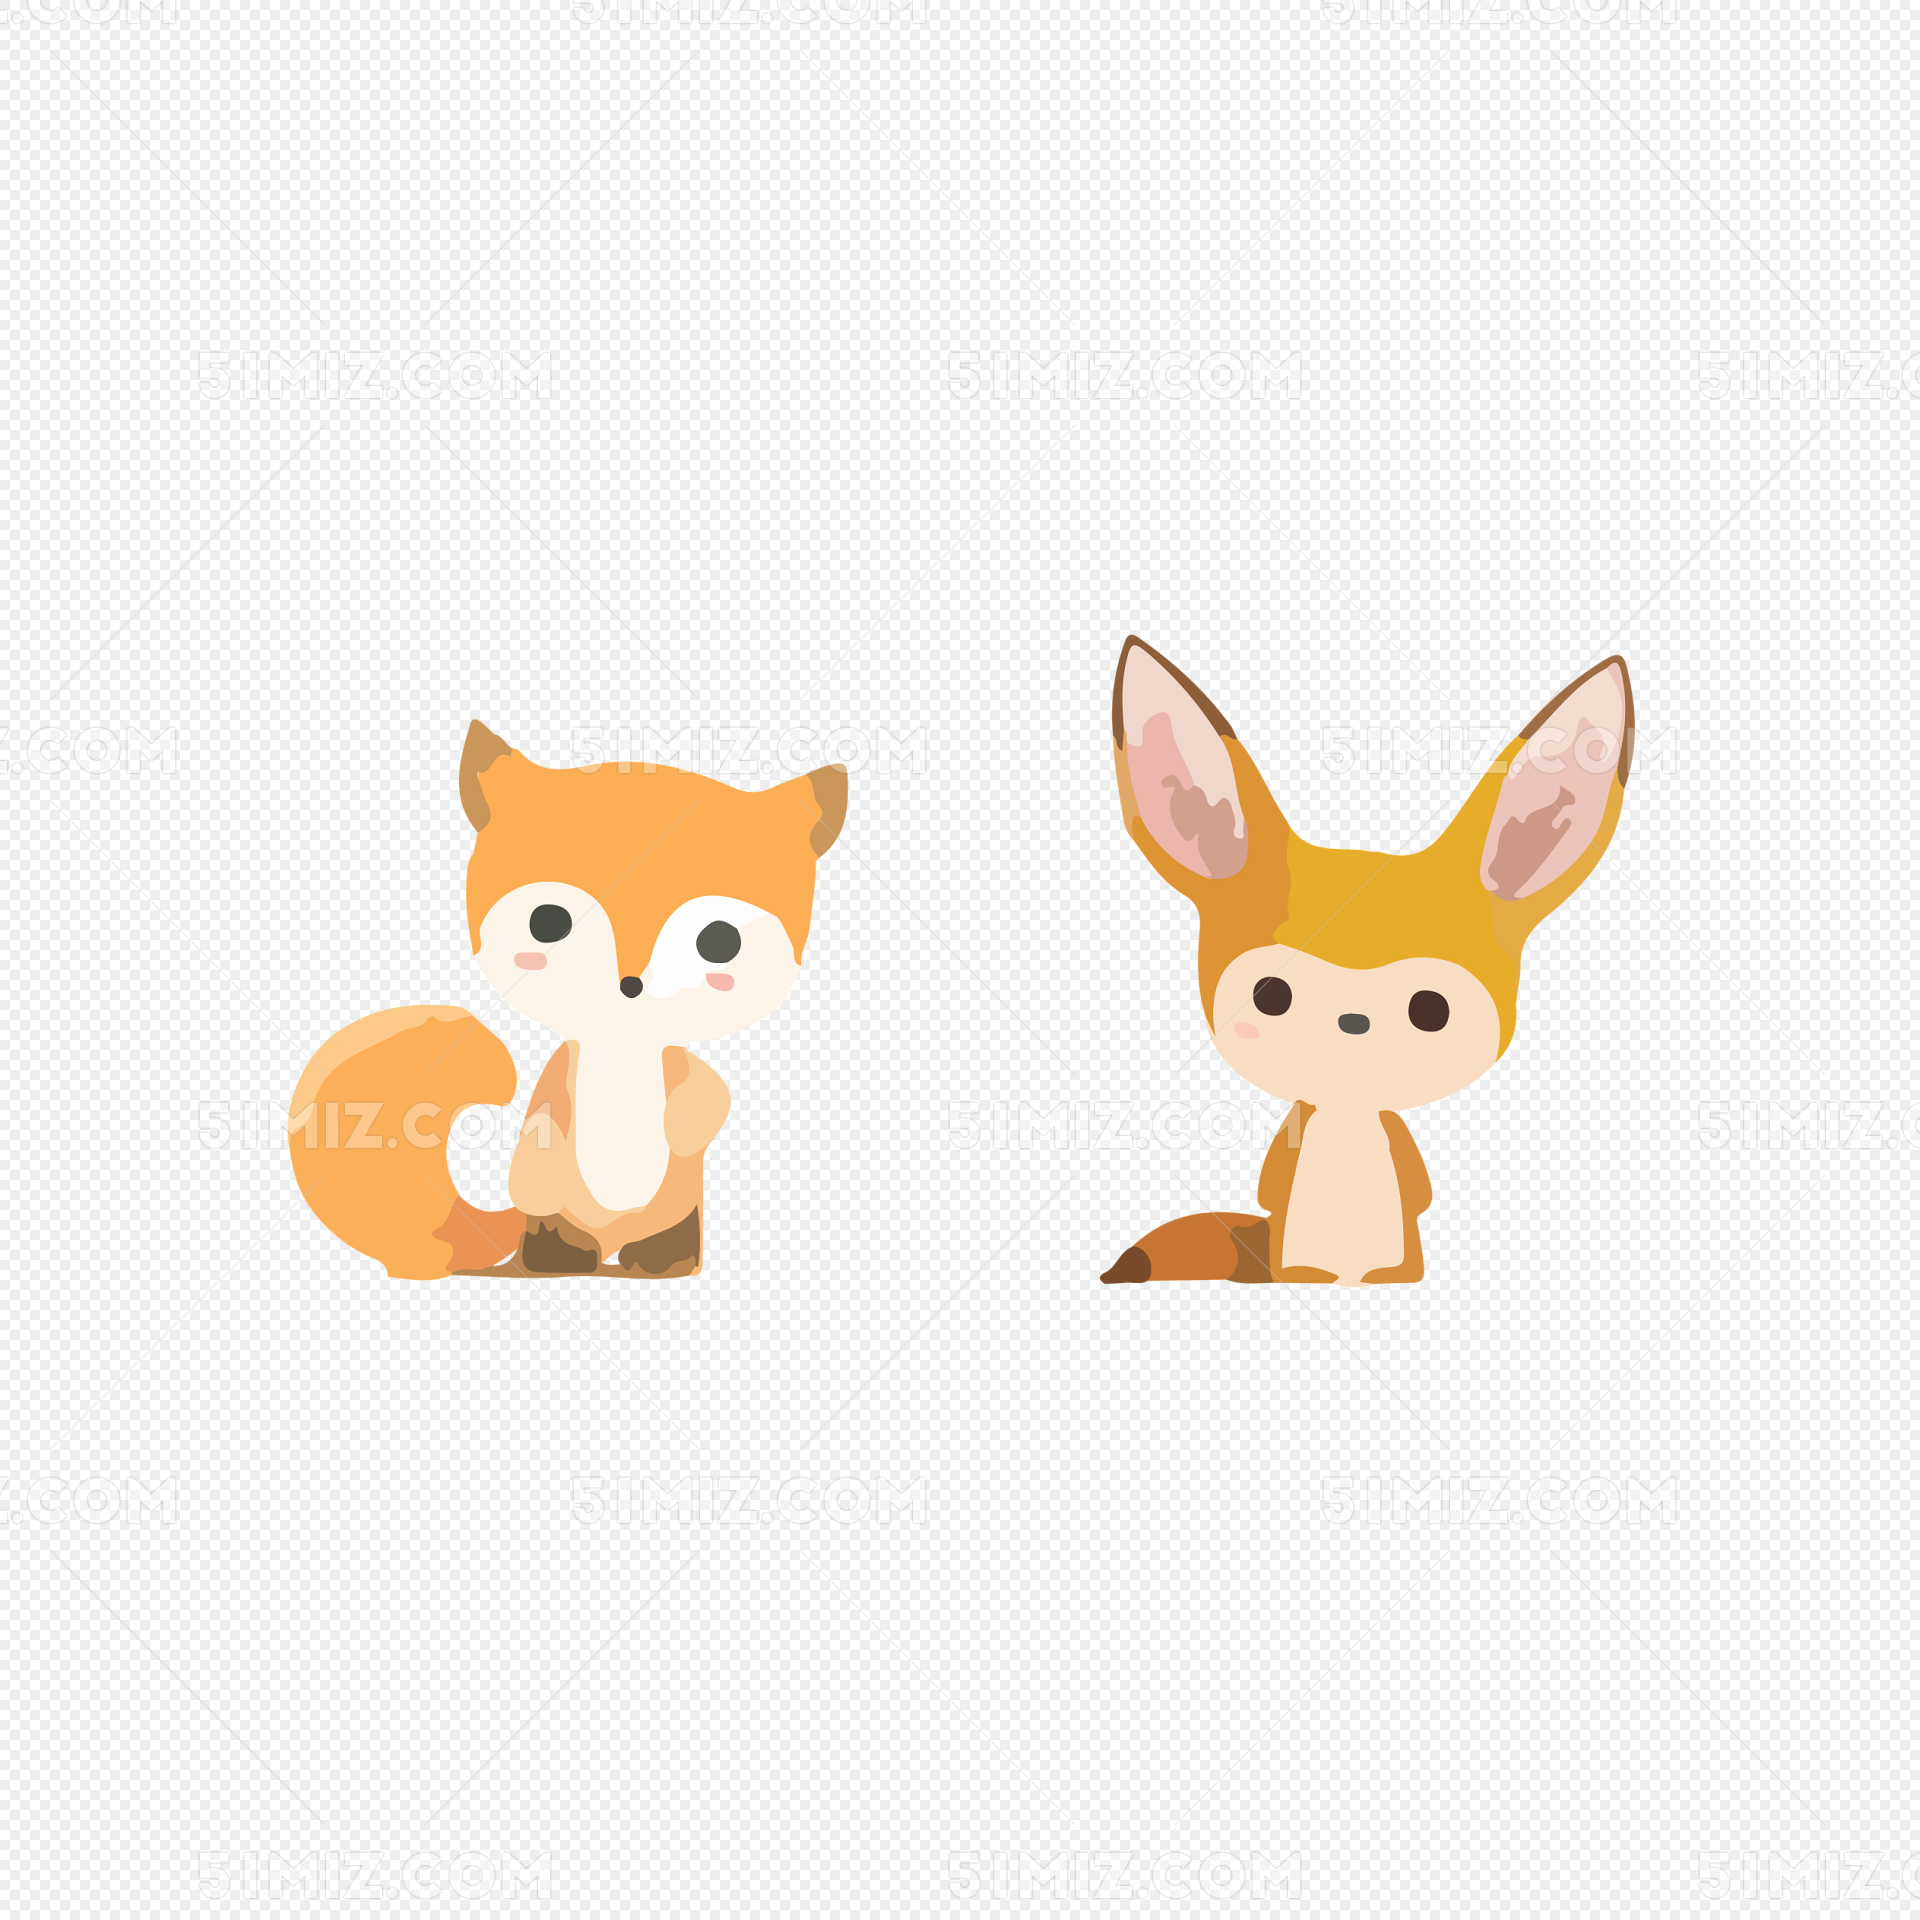 可爱小狐狸 - 堆糖，美图壁纸兴趣社区